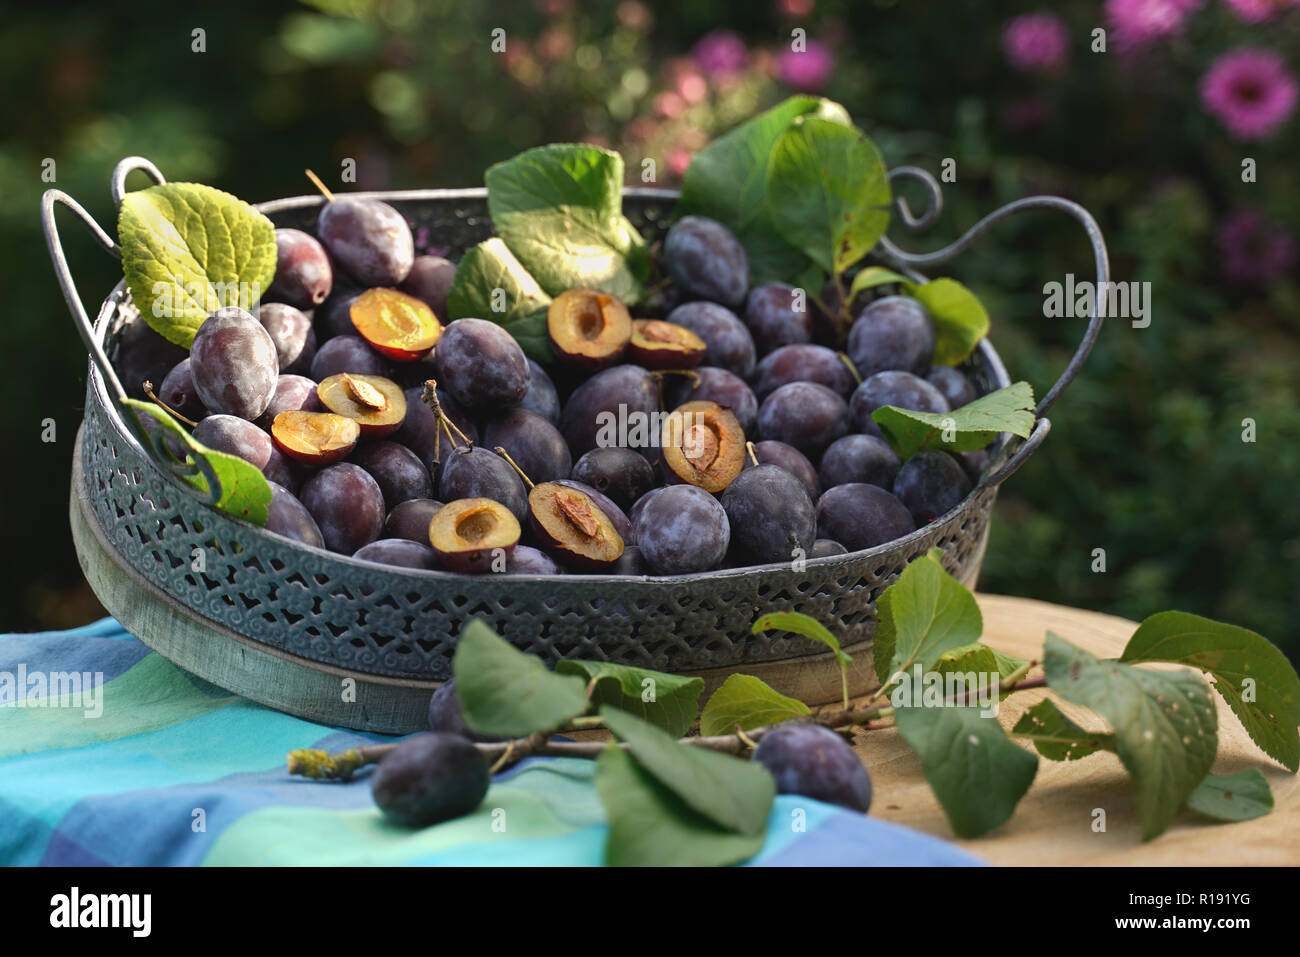 Les prunes se situent dans un bac en bois vintage prunier feuilles sont parmi les fruits mûrs. Film statique avec un zoom arrière en temps réel. Banque D'Images